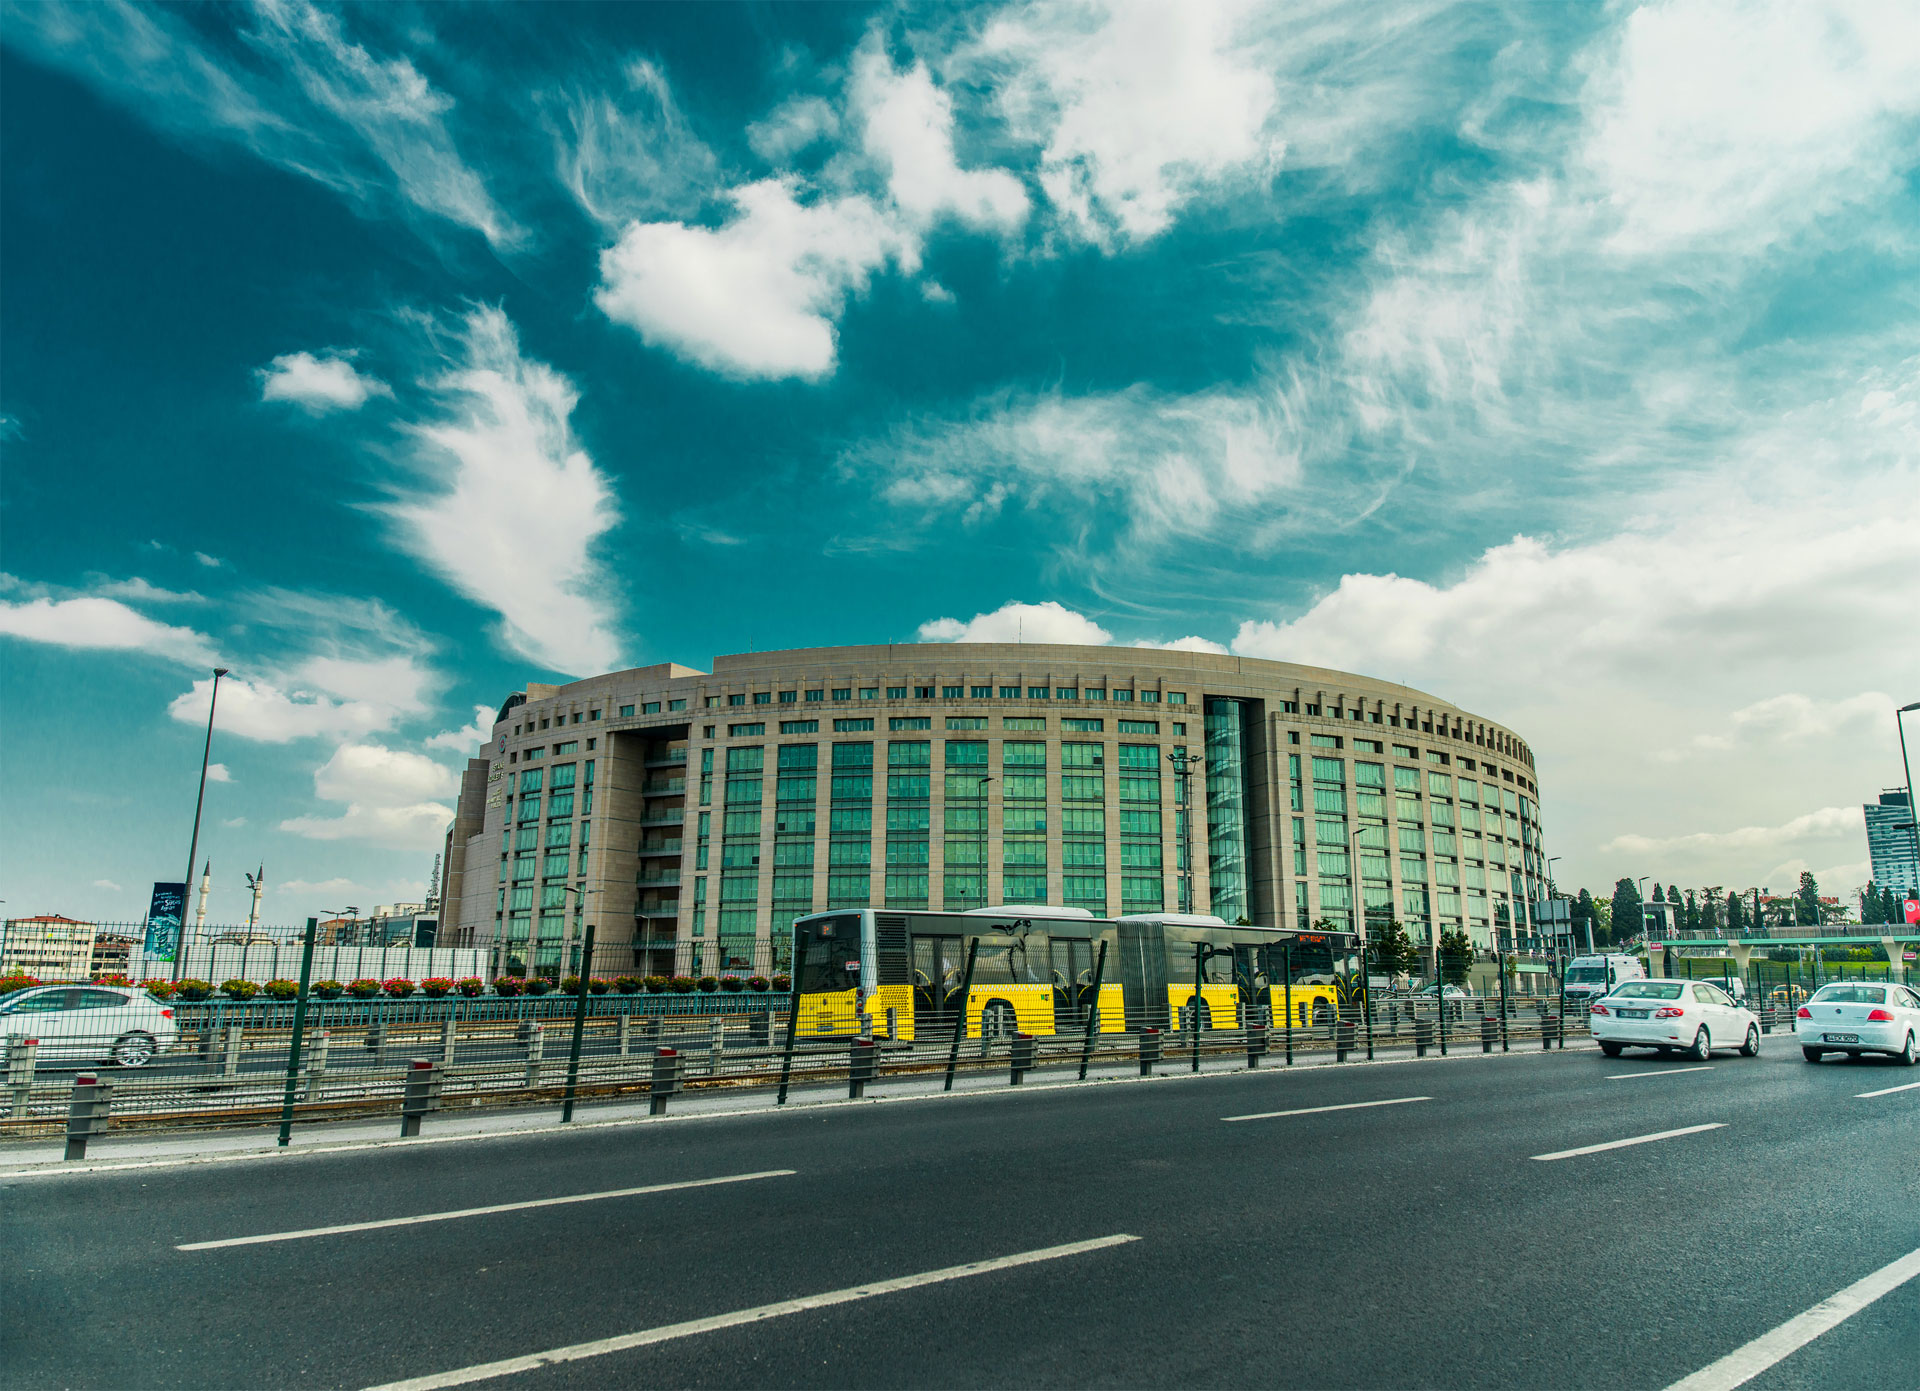 Ein modernes rundes Gebäude mit einer vorbeifahrenden gelben Straßenbahn unter bewölktem Himmel